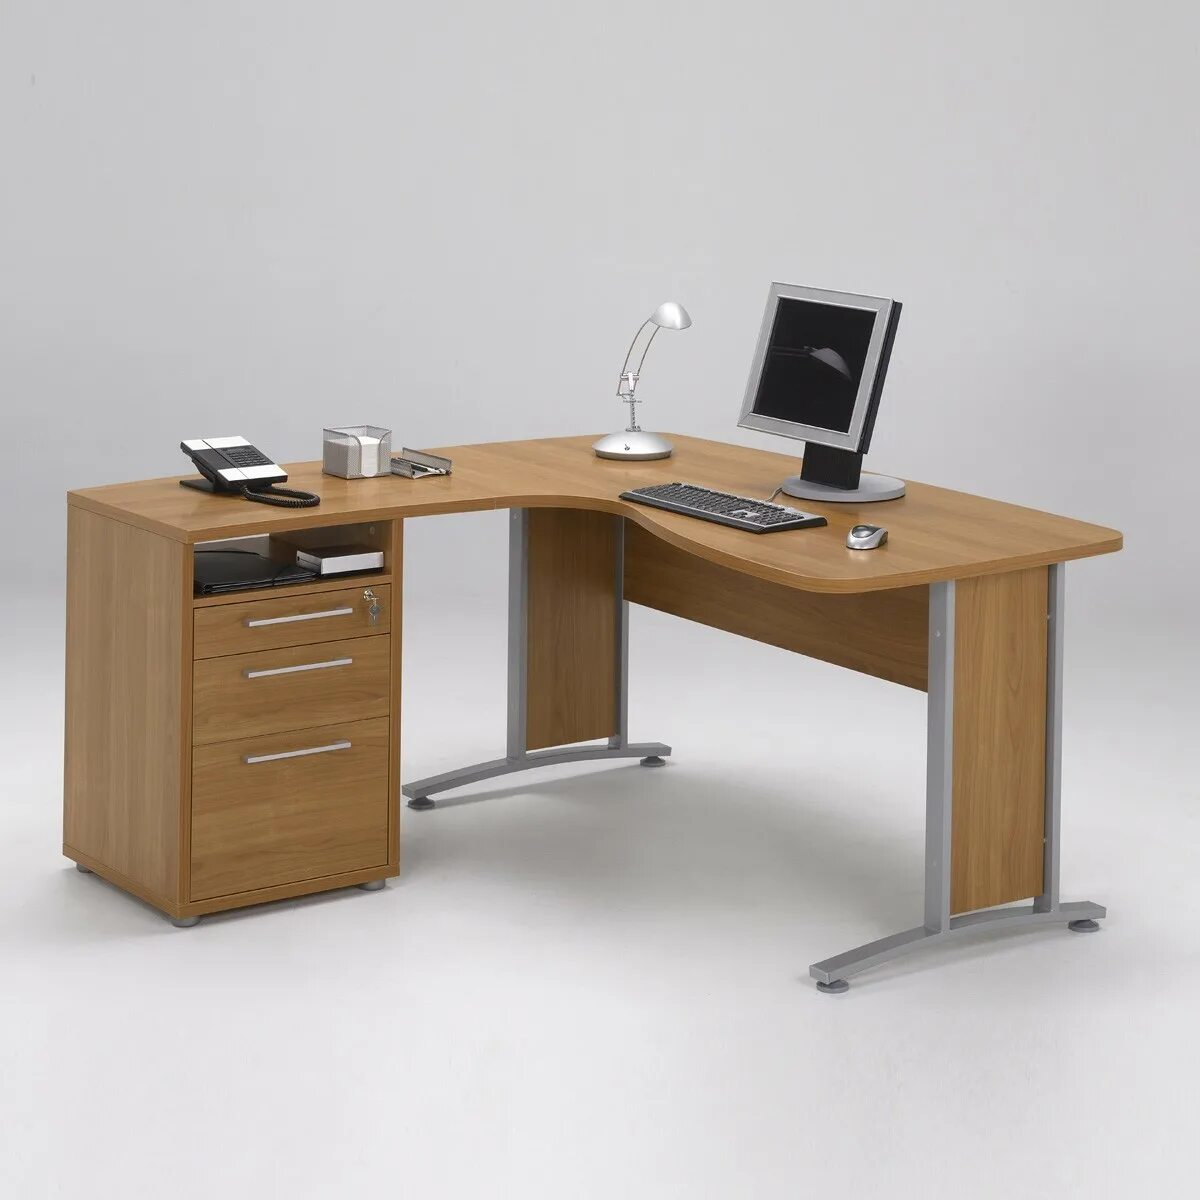 Стол угловой правый. Стол угловой Оптима сф667. Угловой письменный стол. Стол письменный для офиса. Стол офисный письменный.